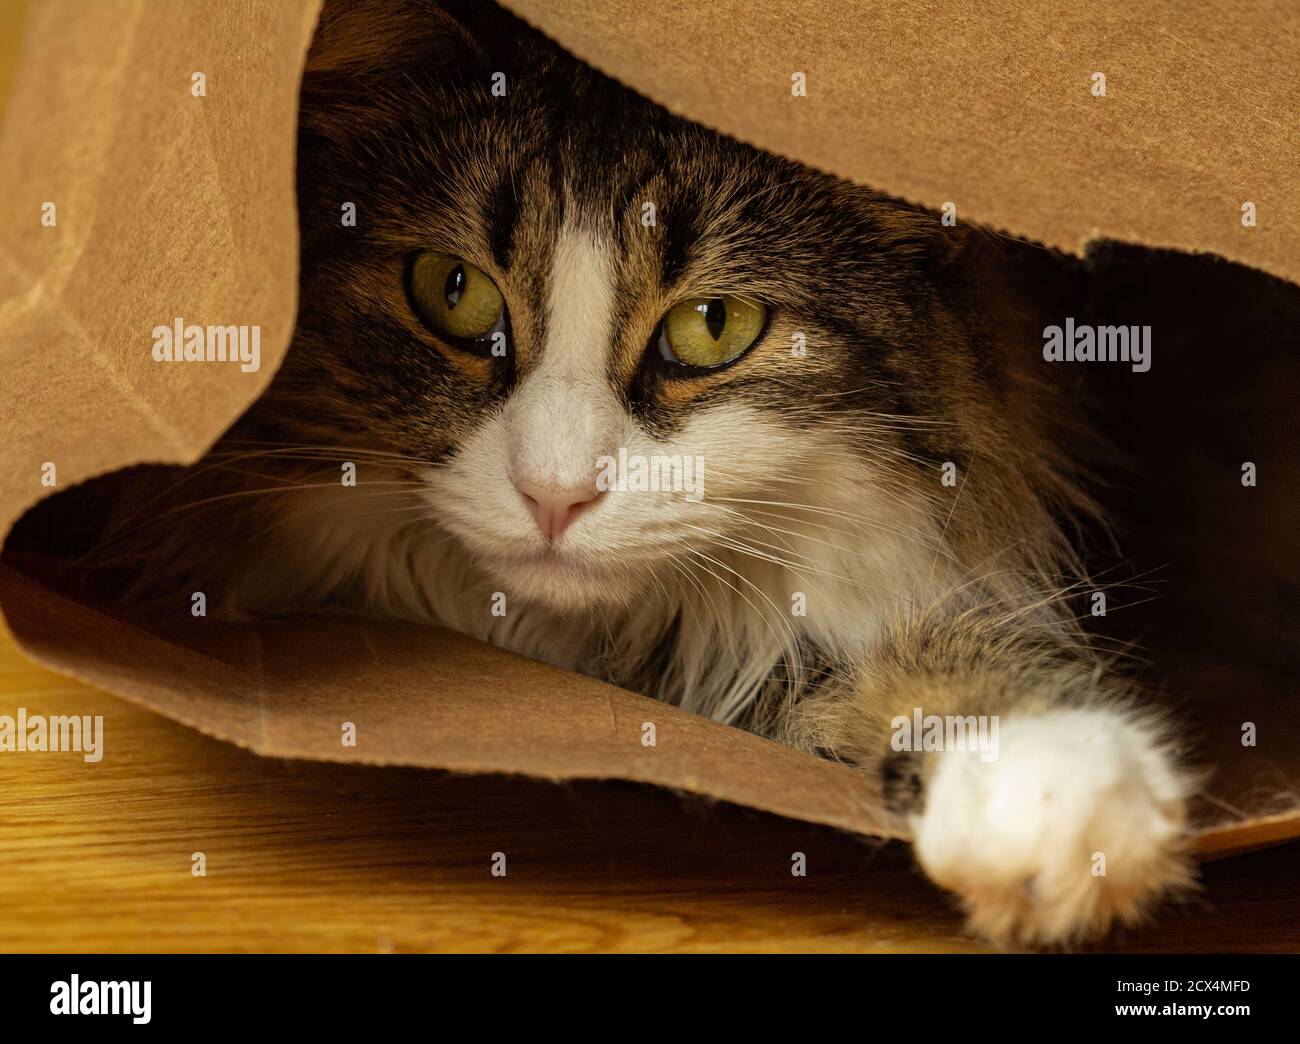 Nahaufnahme einer jungen heimischen Langhaar-Tabby-Katze, die in Seek in einer braunen Papiertüte auf einem Holzboden versteckt spielt. Stockfoto